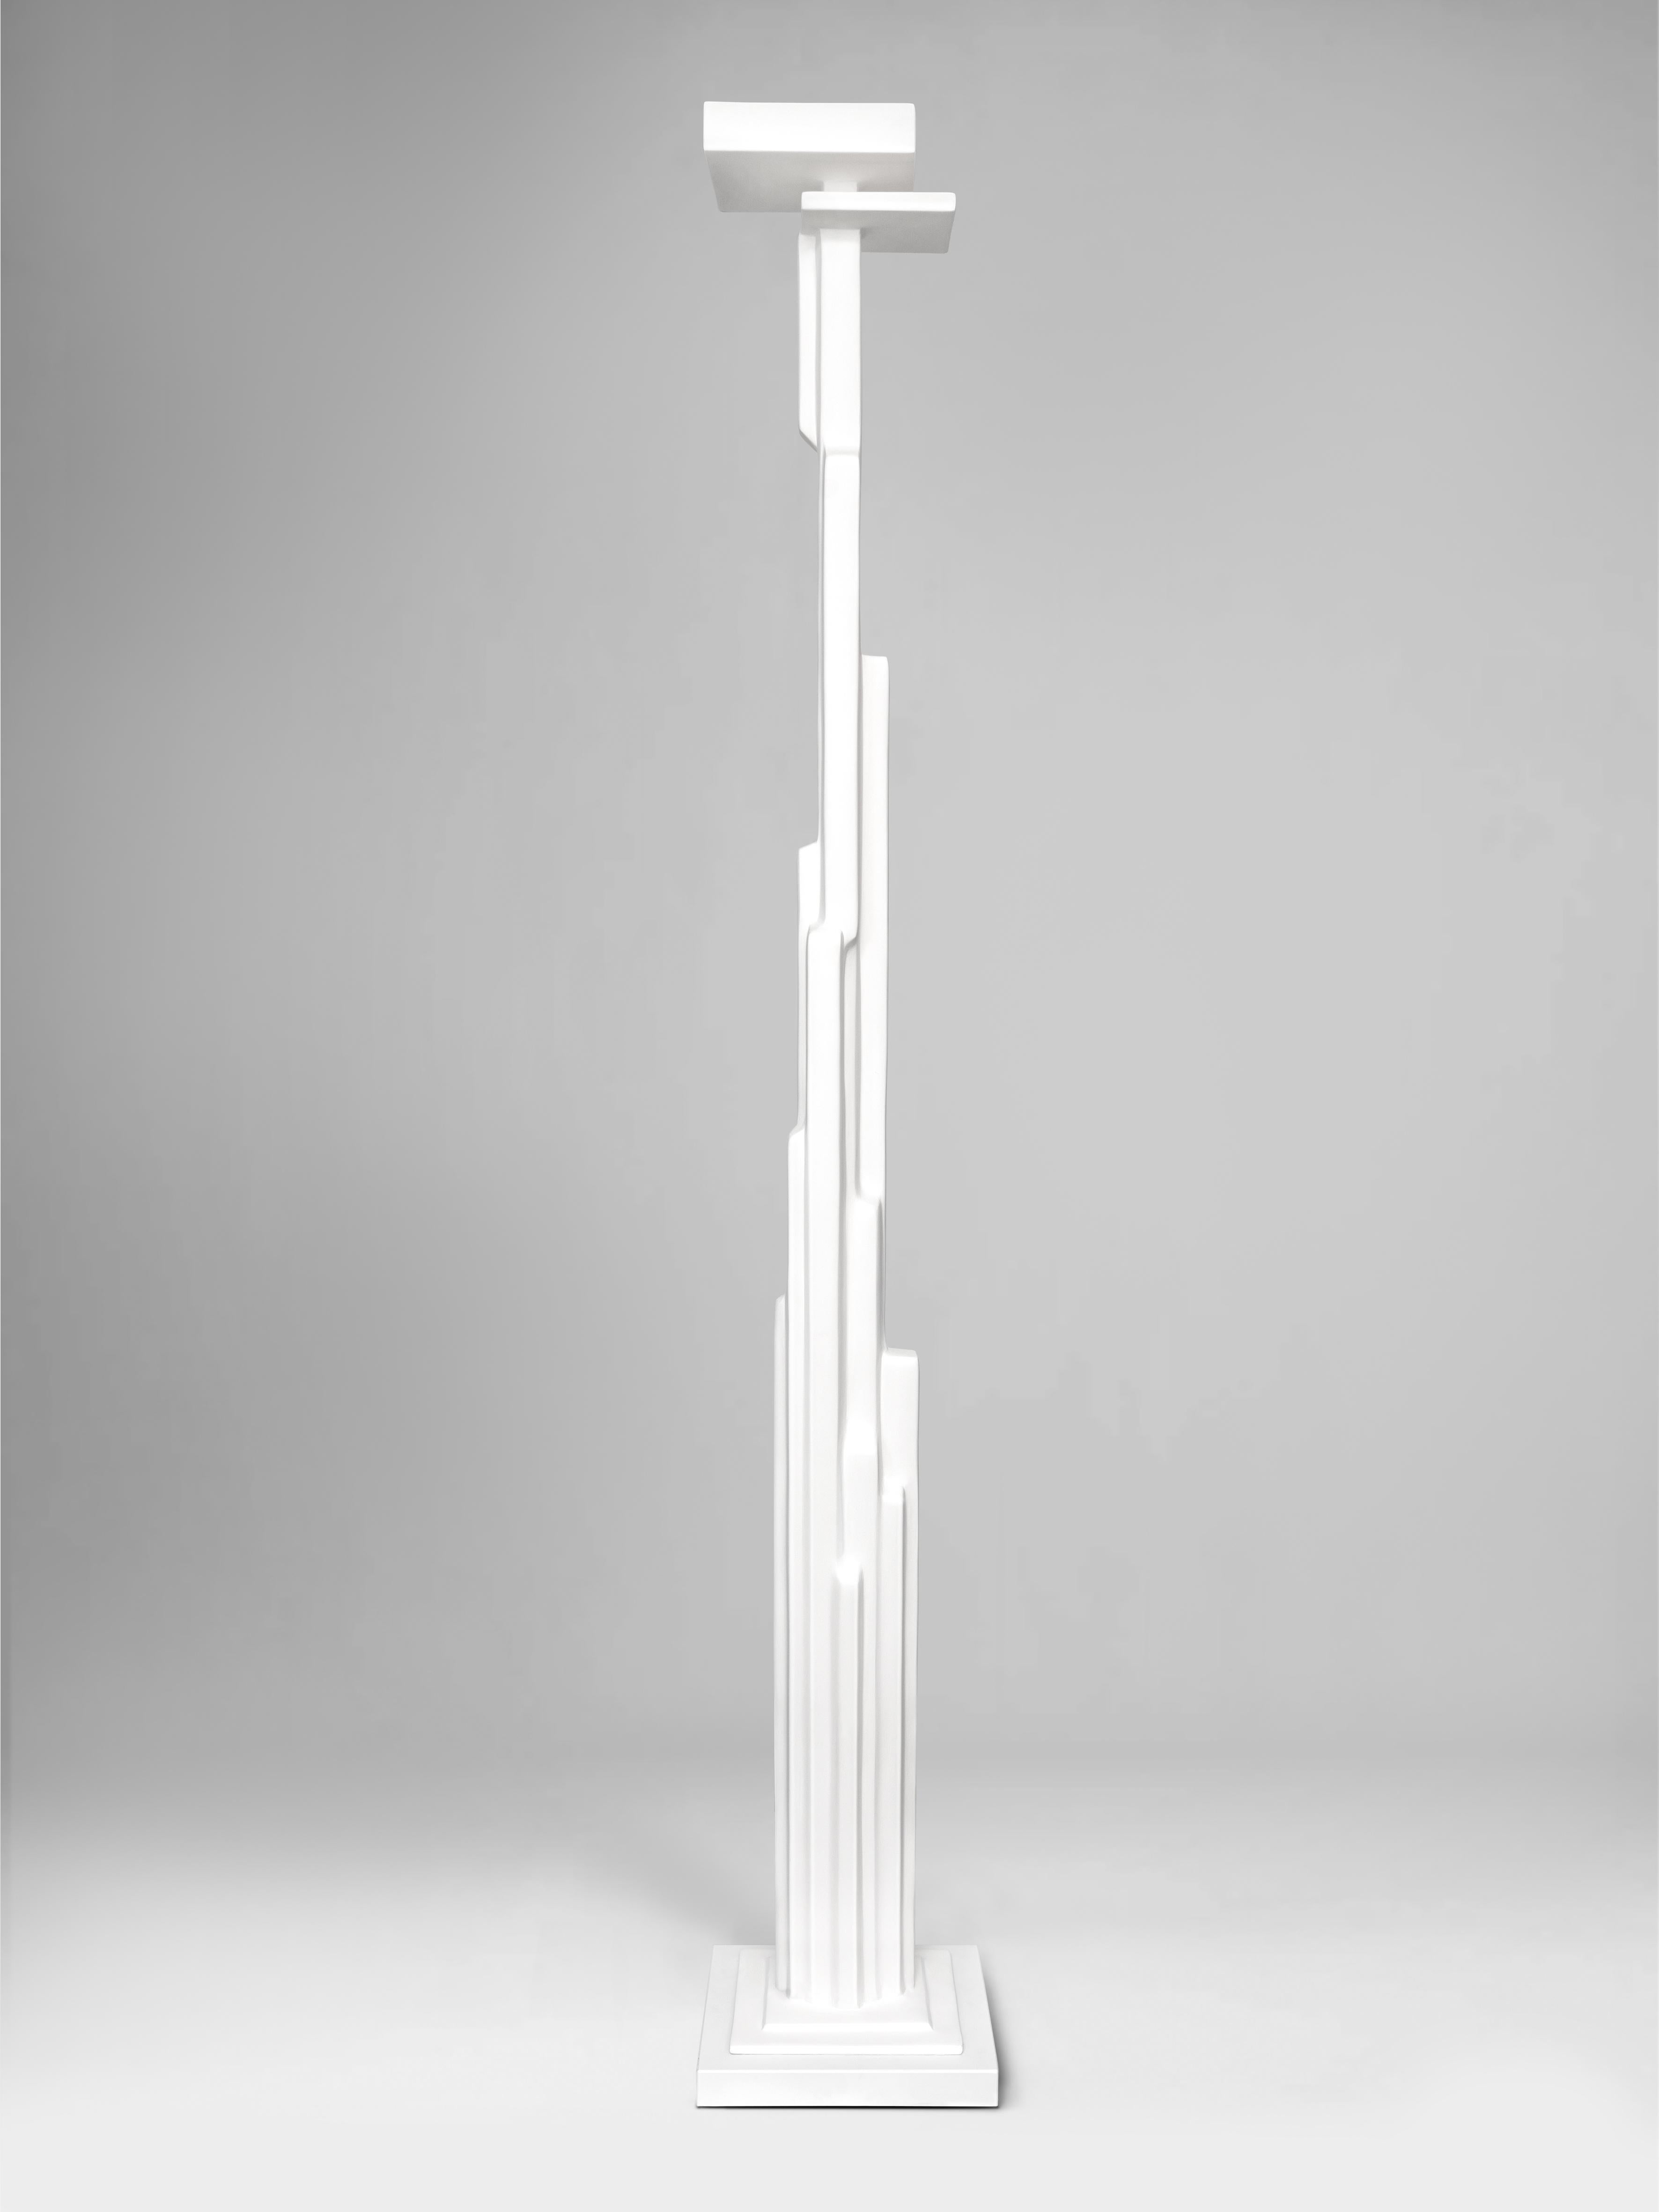 Assemblé avec différentes longueurs de barres d'acier coupées et assemblées sur une base en pierre de quartz blanche, le lampadaire Manhattan rappelle la verticalité visuelle des bâtiments new-yorkais. Sculptée à la main, elle est unique.  Allumoir